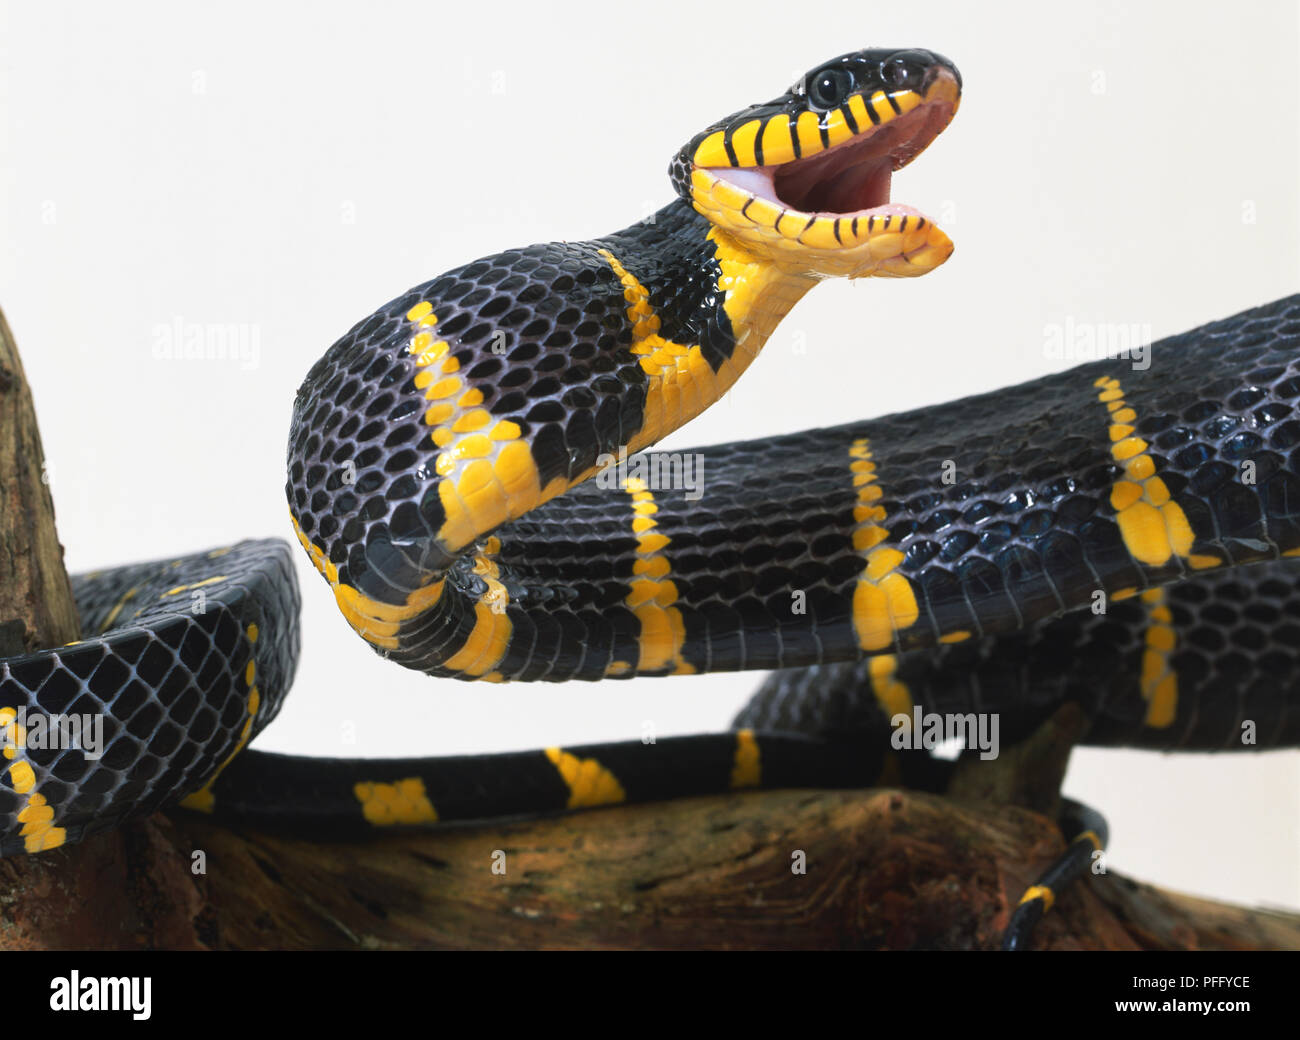 Mangrove Schlange, lebendige schwarze und gelbe Färbung, Mund weit geöffnet Beute als reißzähne zum Streik an der Rückseite des Mundes. Stockfoto